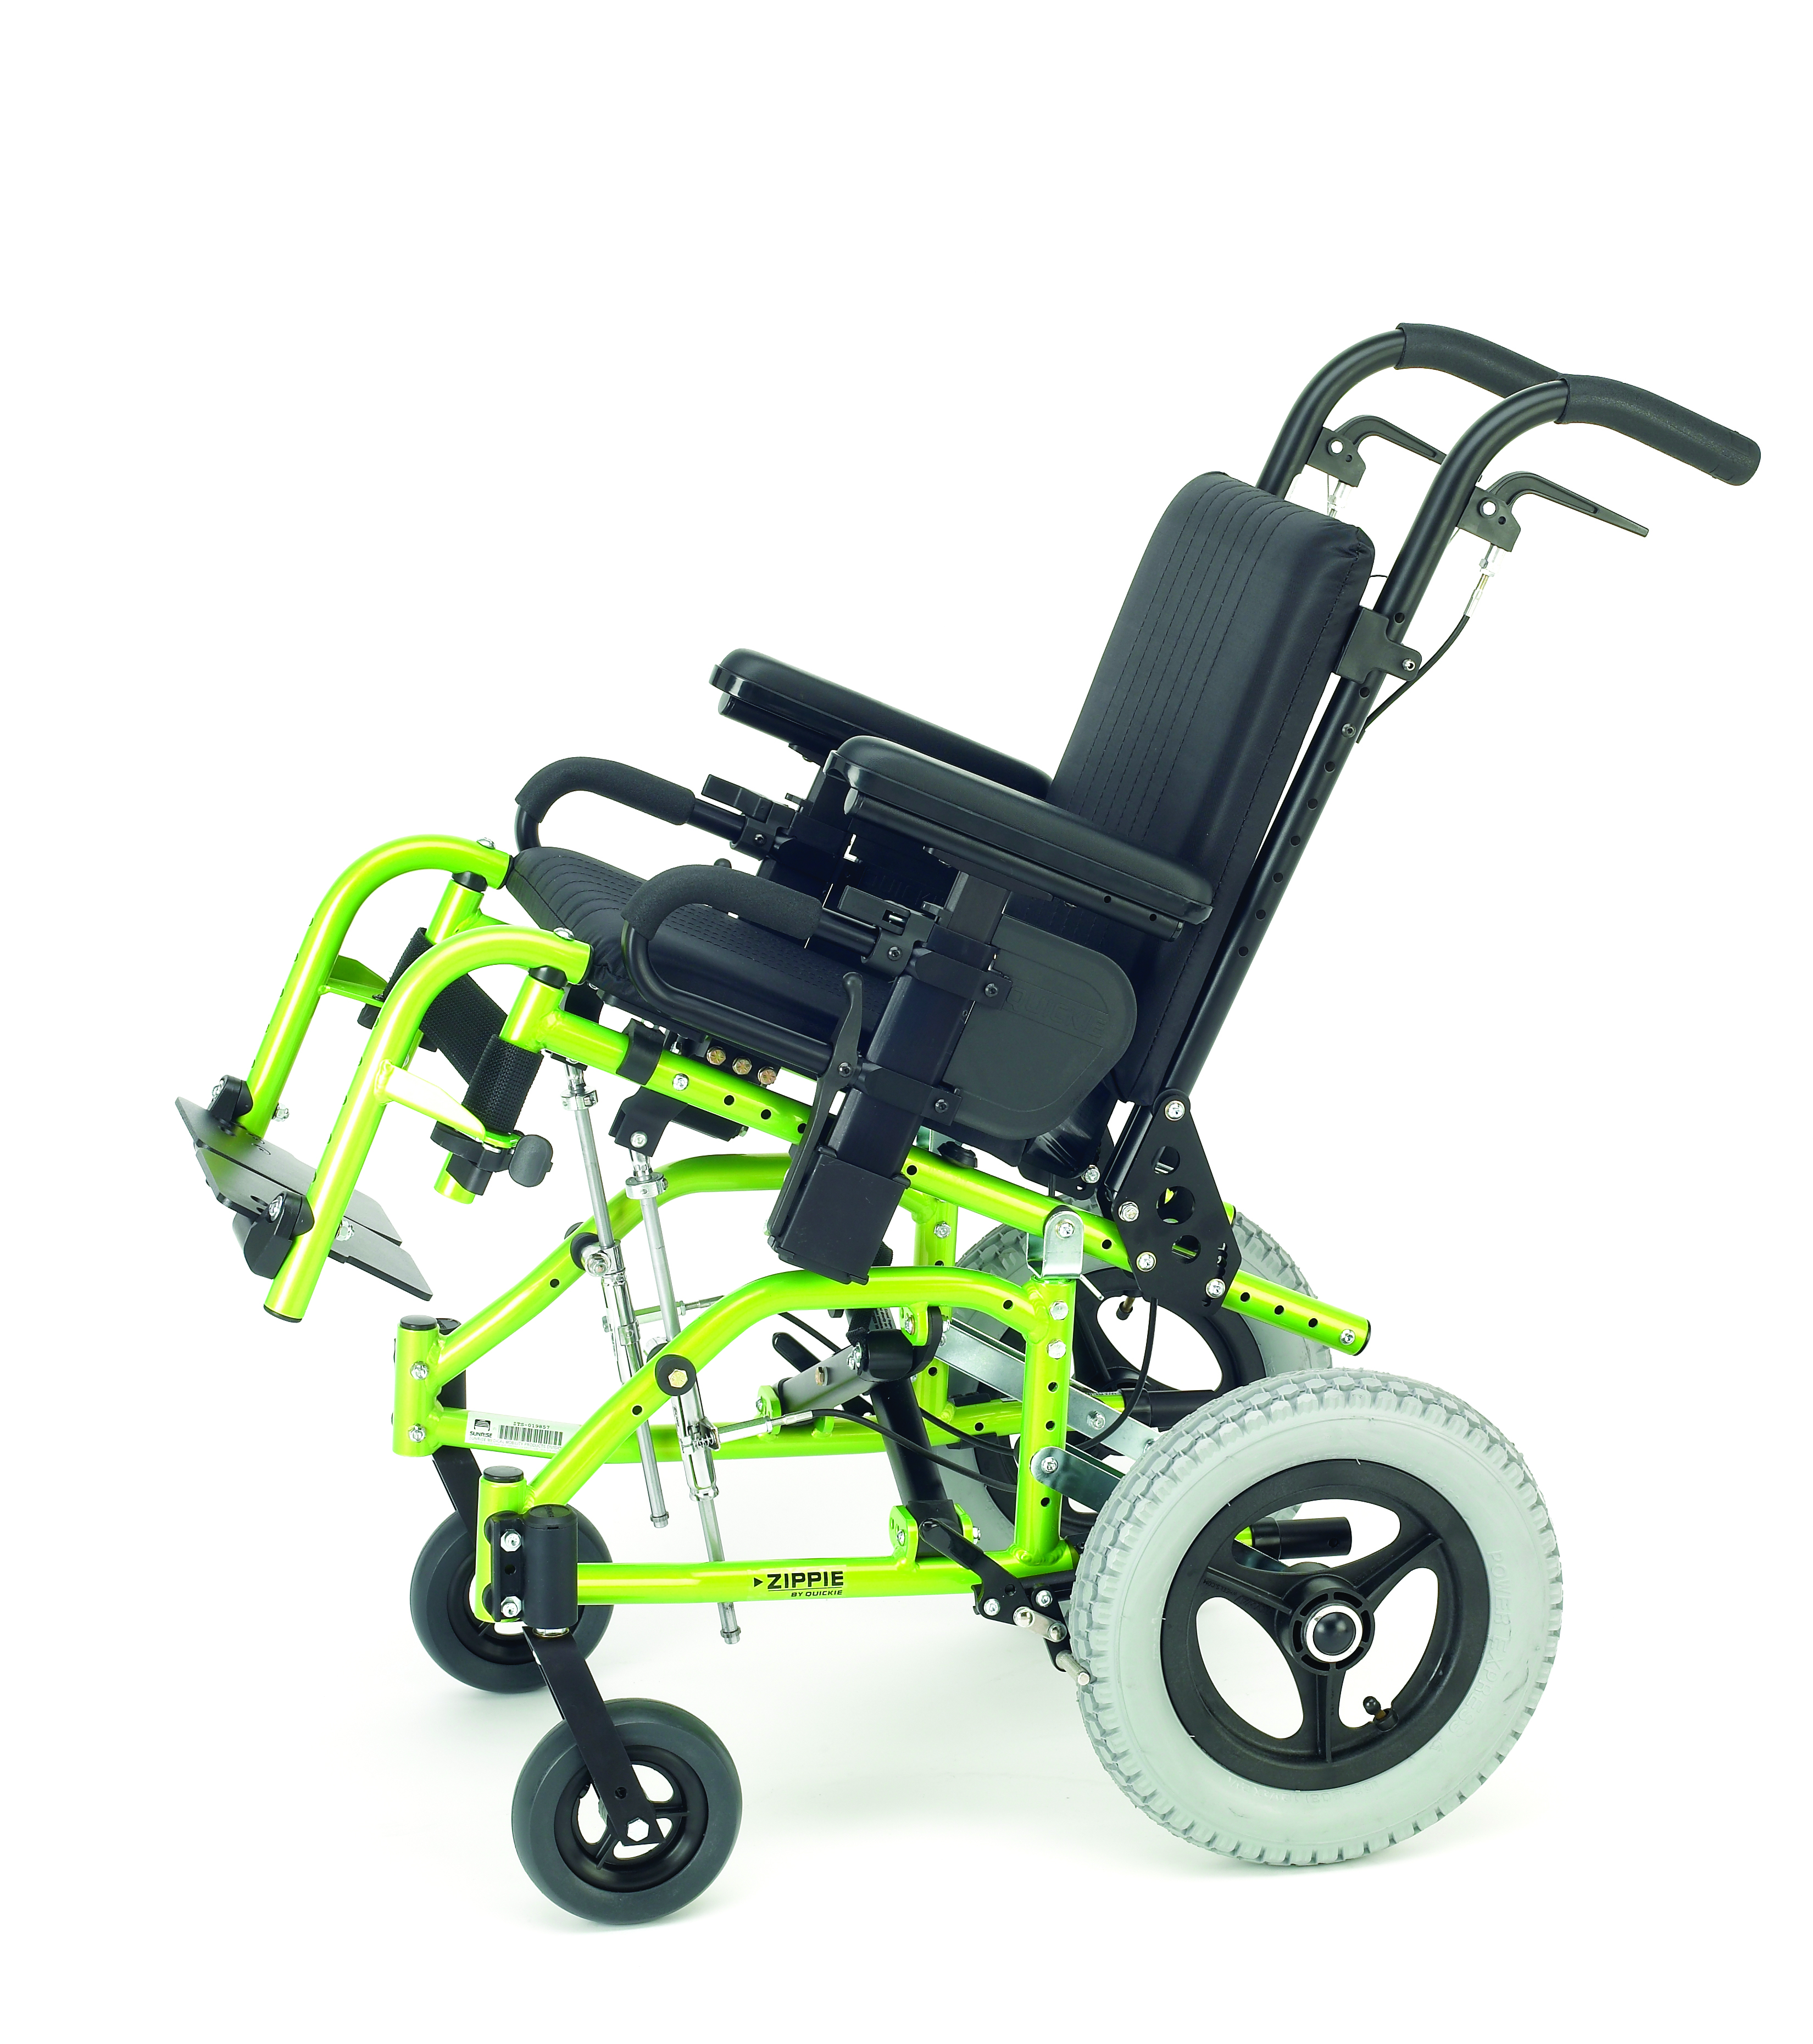 Excel g5 Kids кресло-коляска для детей. Xeryus Power 10 кресло коляска с электроприводом. Обсервер коляски с электроприводом. Обсервер стандарт коляски с электроприводом. Сиденье коляска для ребенка